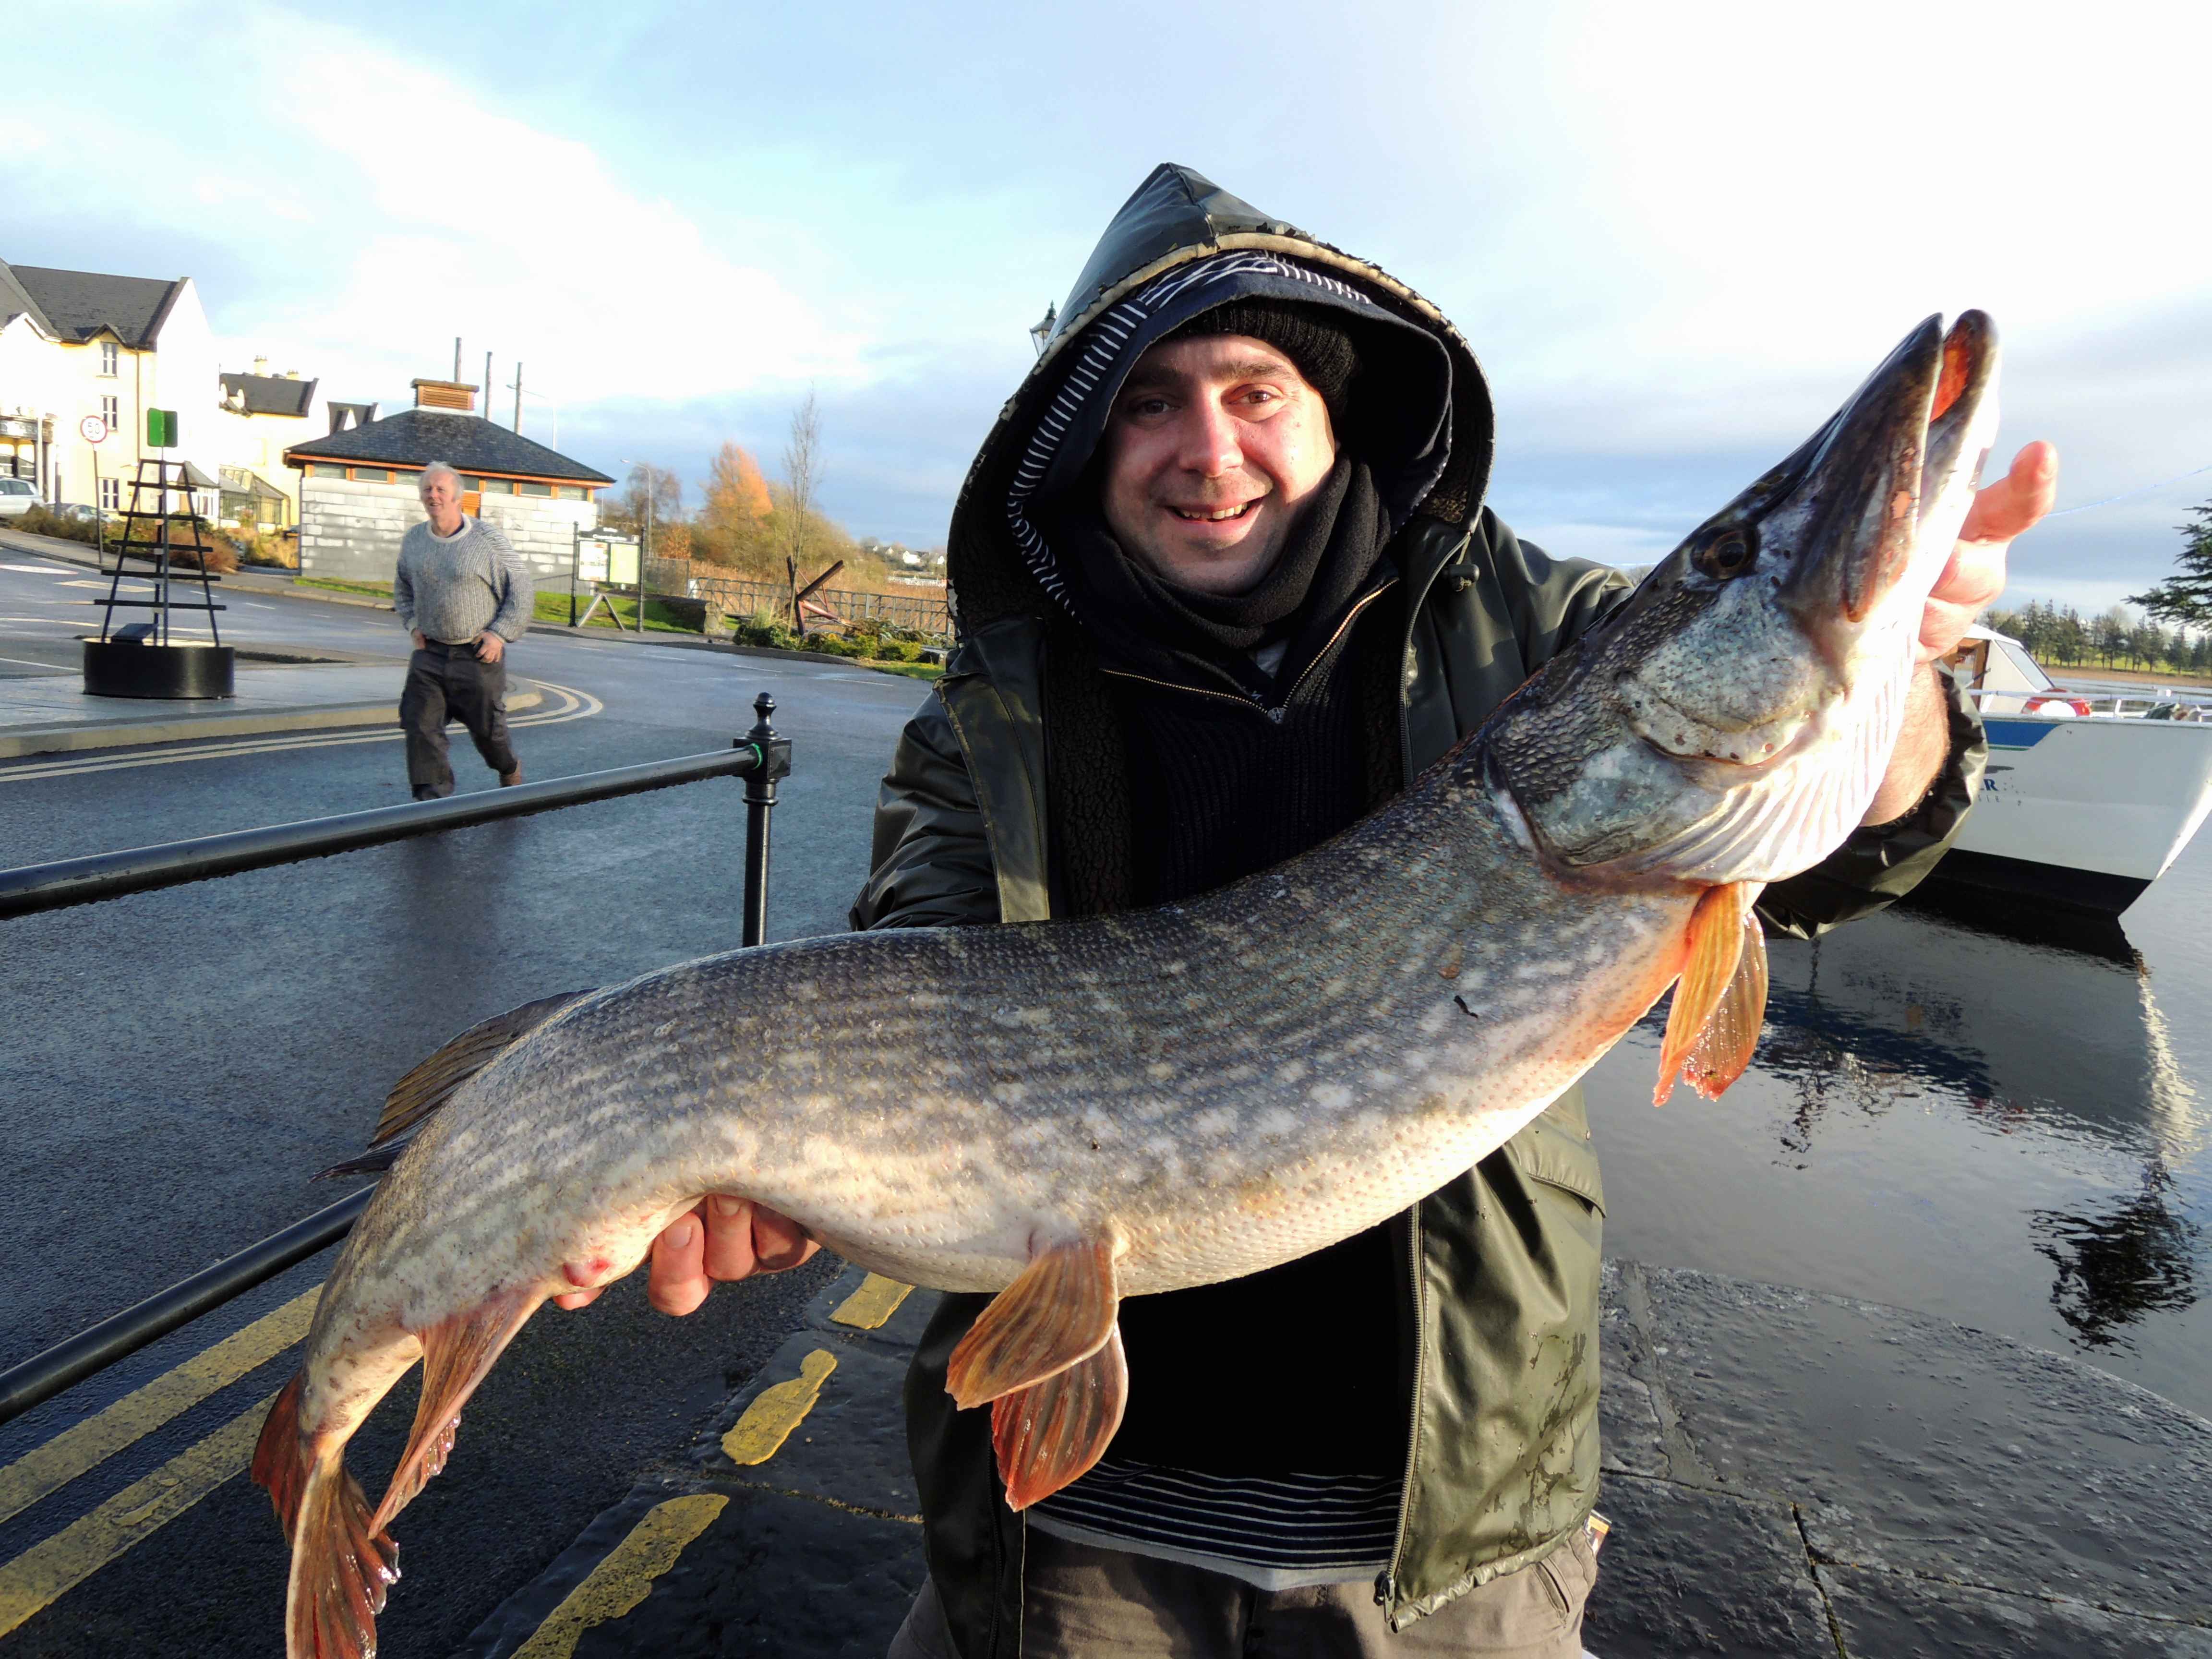 Séjour de pêche aux brochets en Irlande, 1m07, 27 livres, pris au leurre souple.